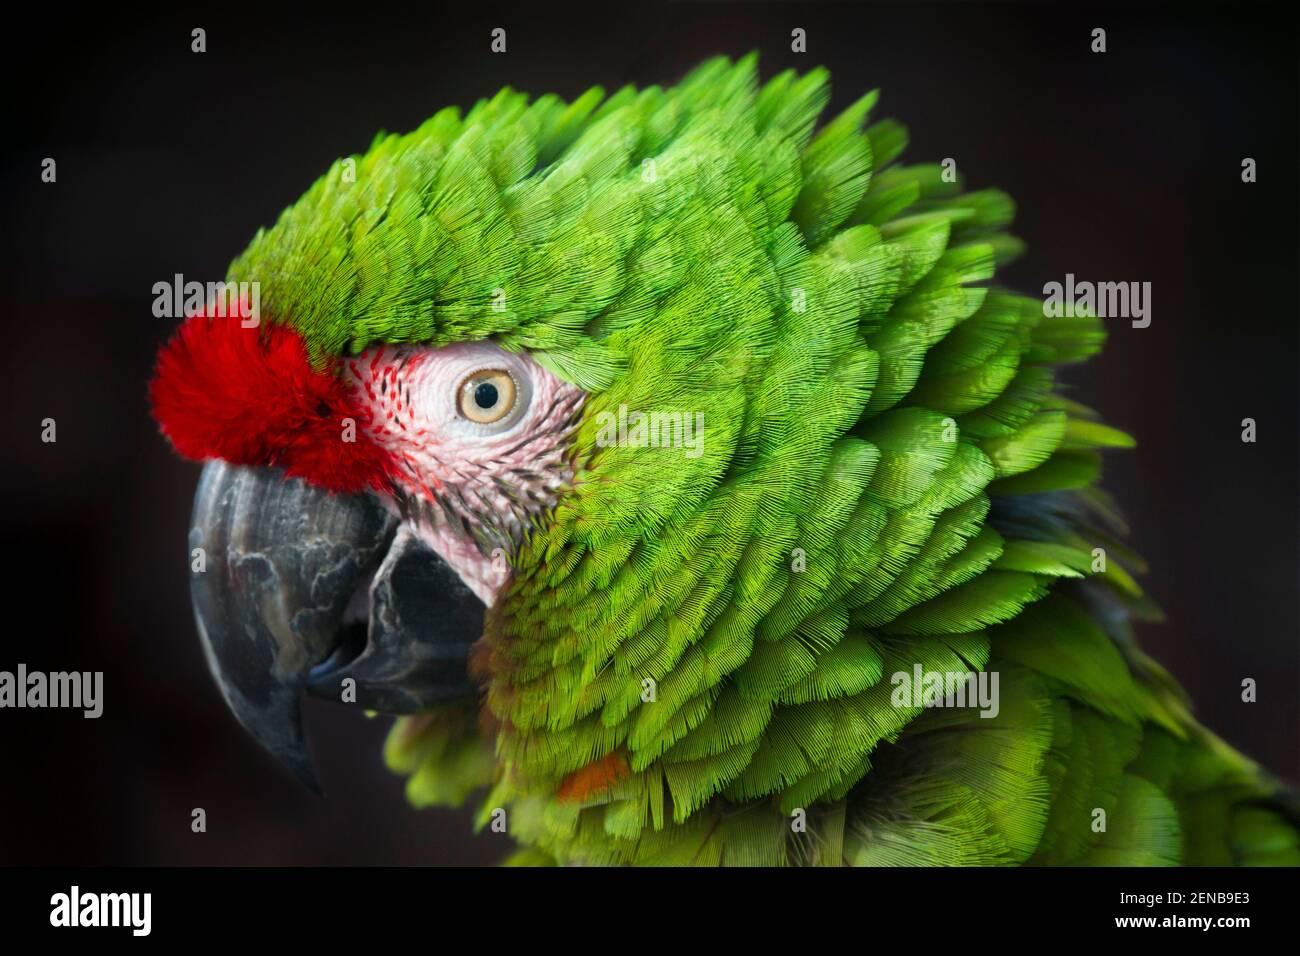 Macaw militaire (Ara militararis) originaire de l'Amérique centrale et de l'Amérique du Sud. Captif Banque D'Images